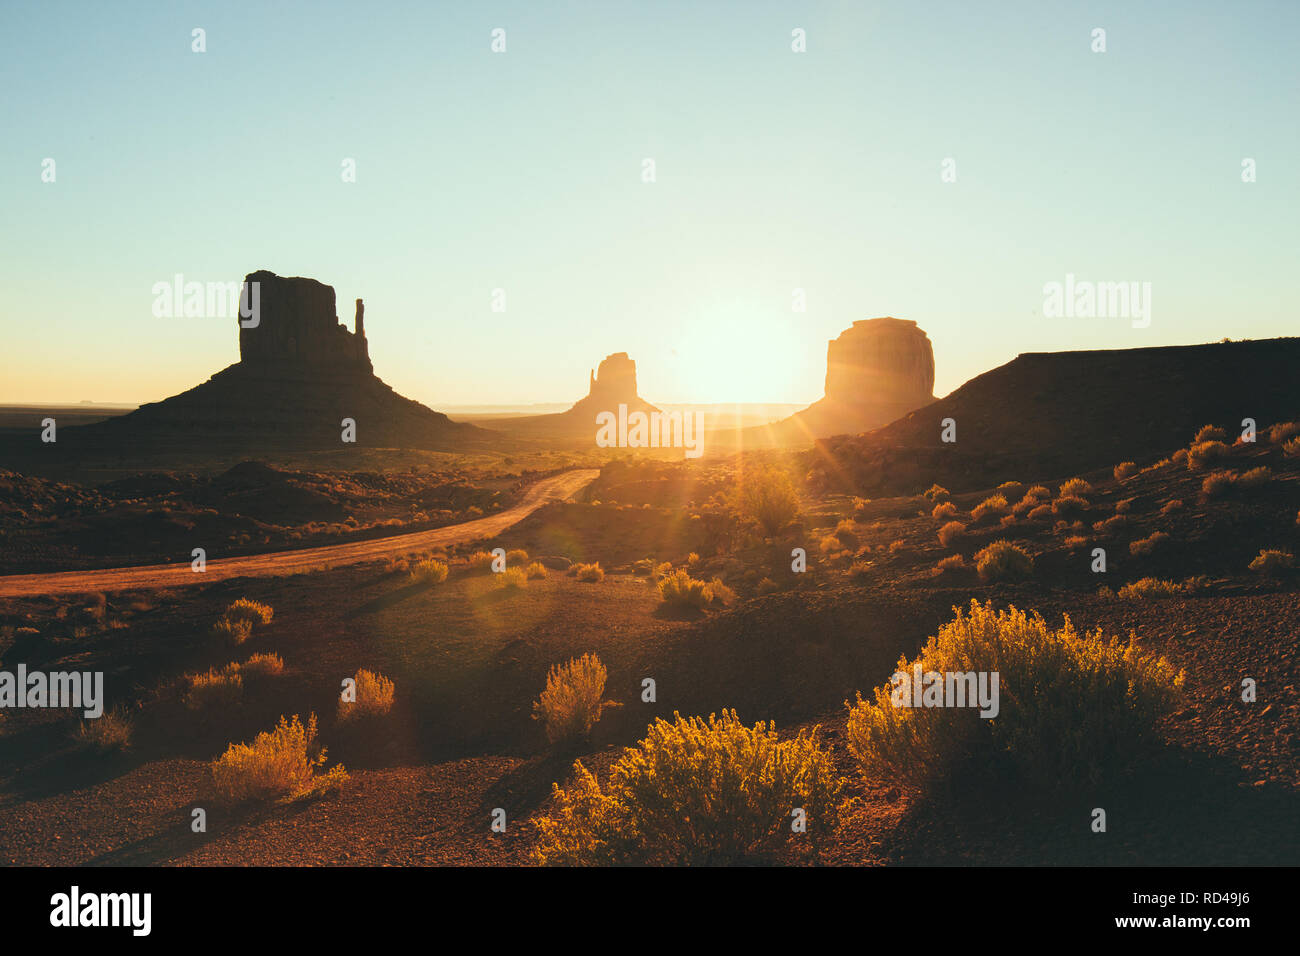 Klassische Ansicht der malerischen Monument Valley mit dem berühmten Mittens und Merrick Butte in wunderschönen goldenen lichter Morgen bei Sonnenaufgang im Sommer, Utah, USA Stockfoto